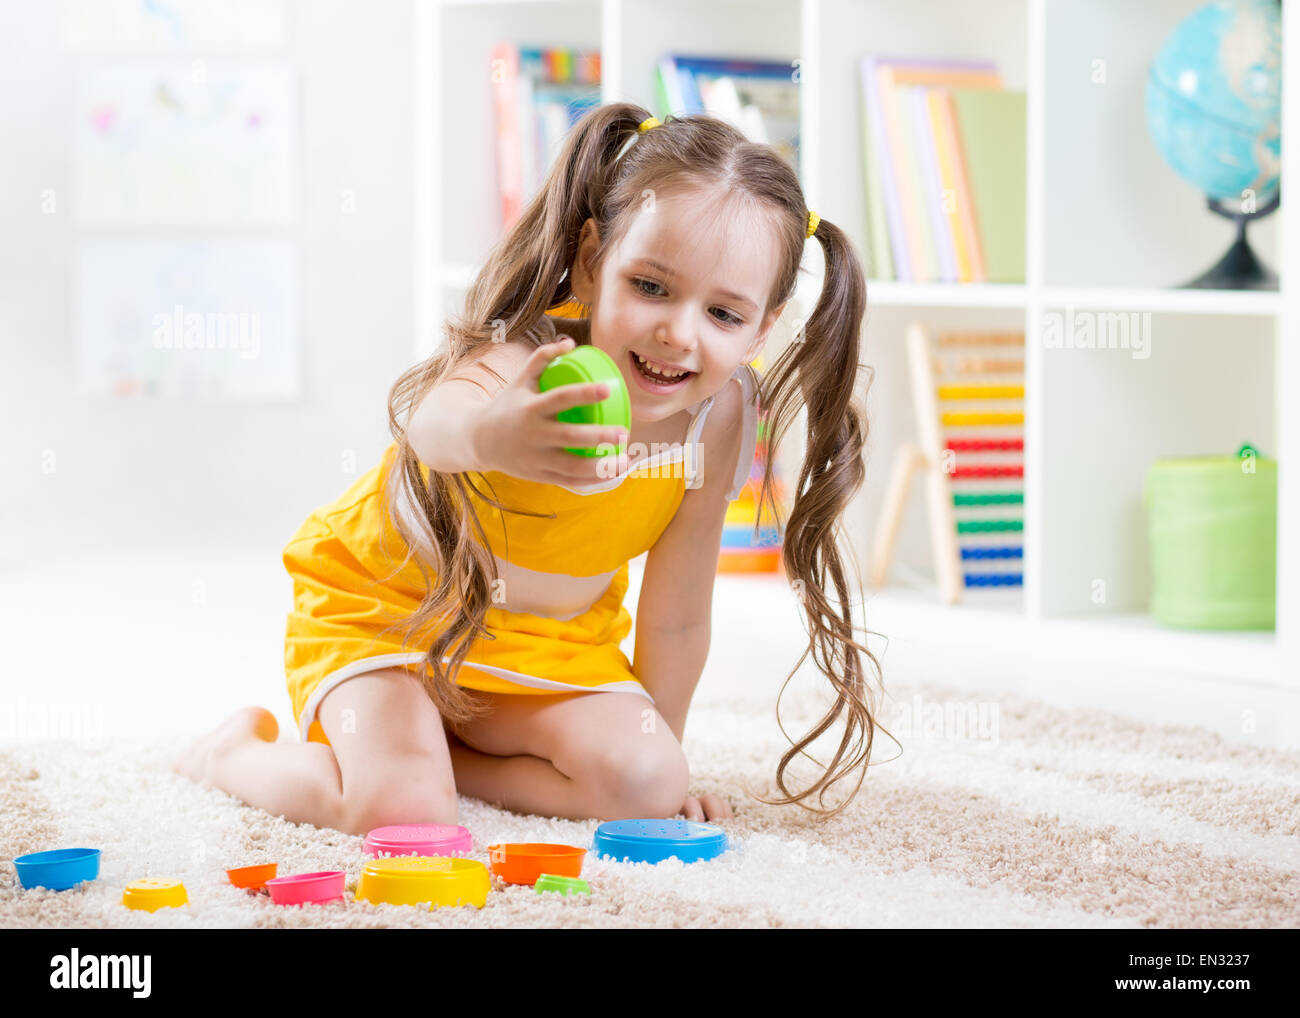 Enfant fille jouant avec des jouets colorés Banque D'Images